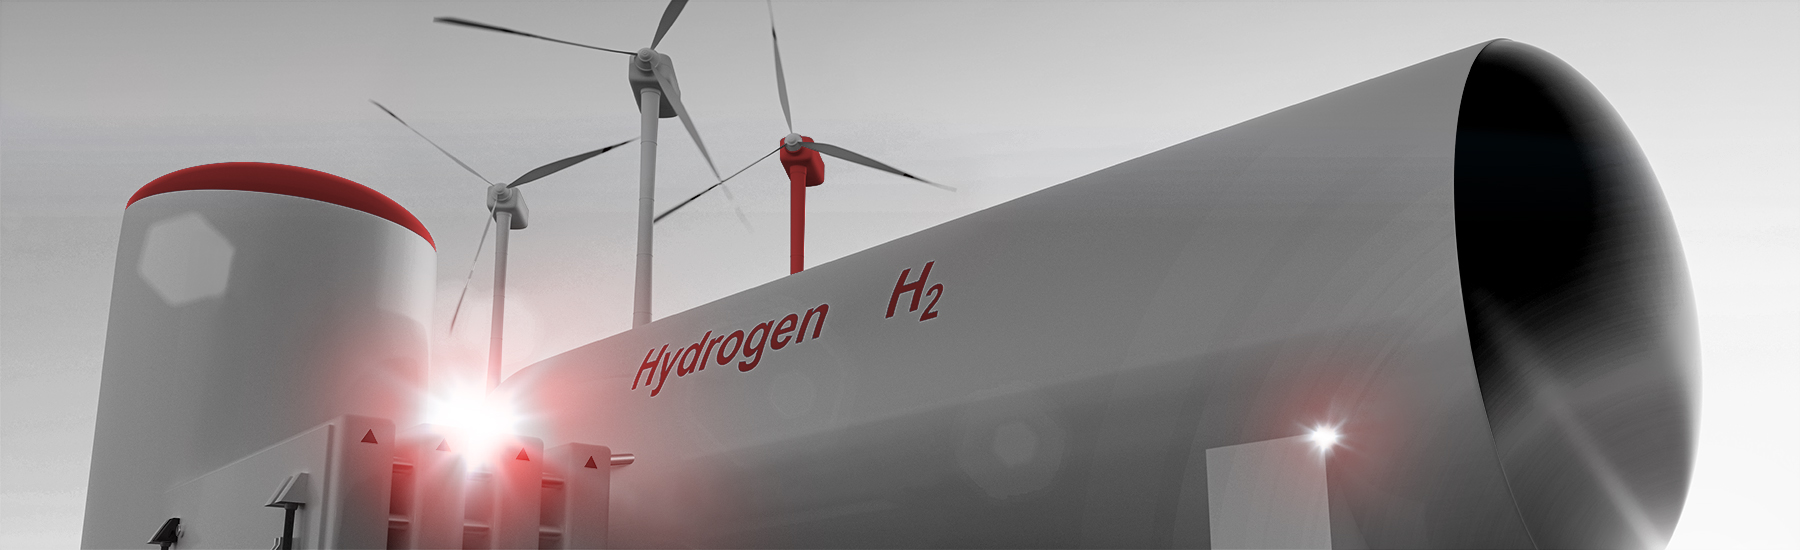 AVAT Wasserstoff H2 CROSS SECTOR SOLUTIONS für dezentrale Energiesysteme 